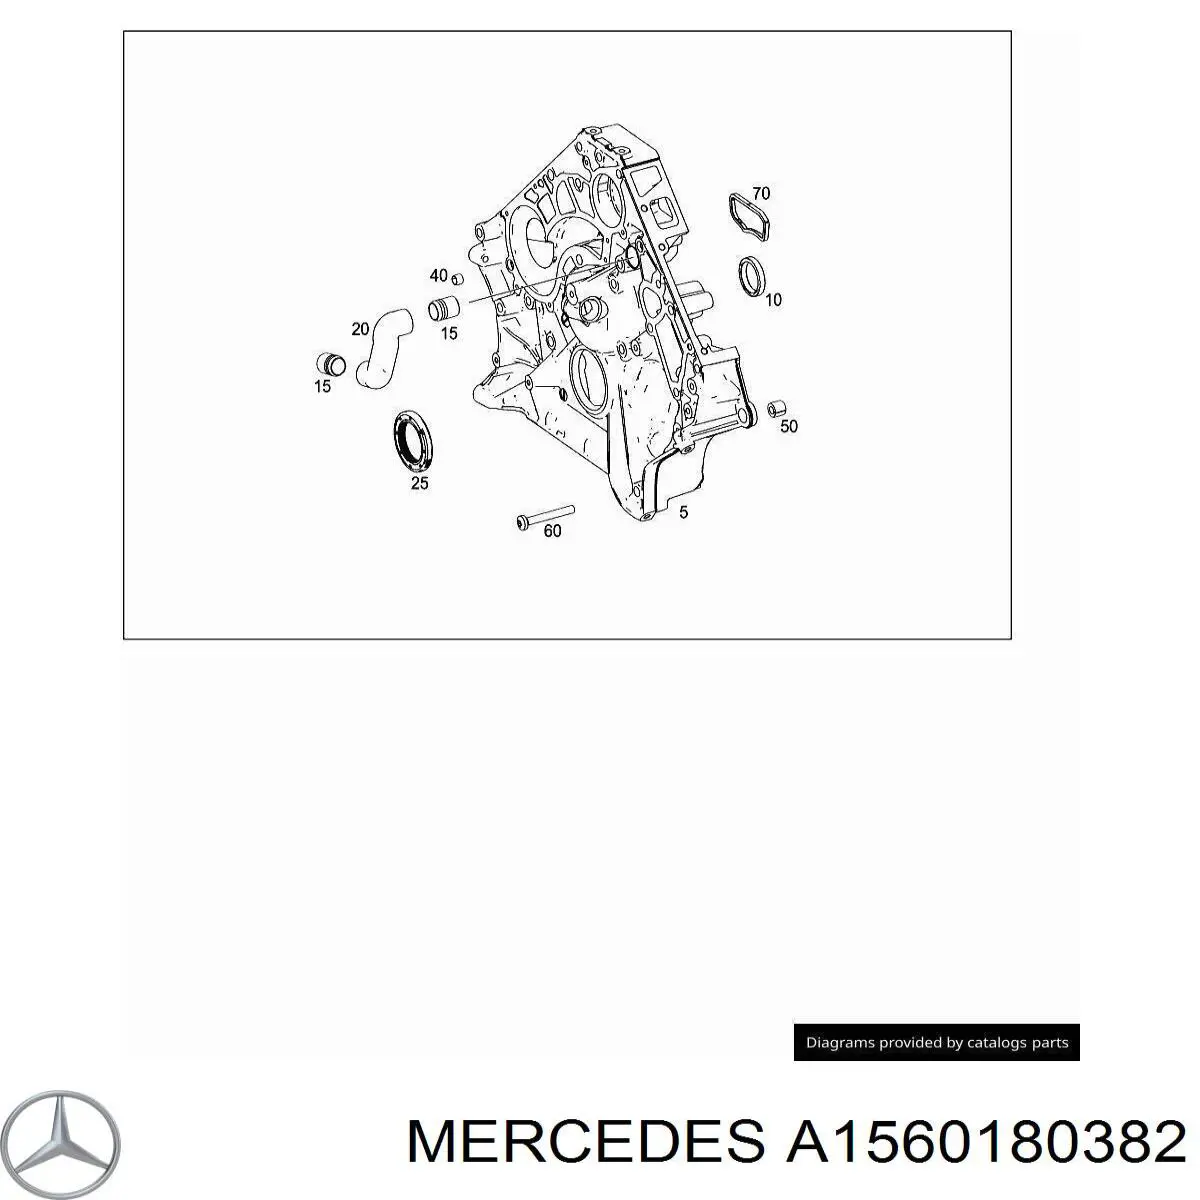 A1560180382 Mercedes патрубок вентиляции картера (маслоотделителя)